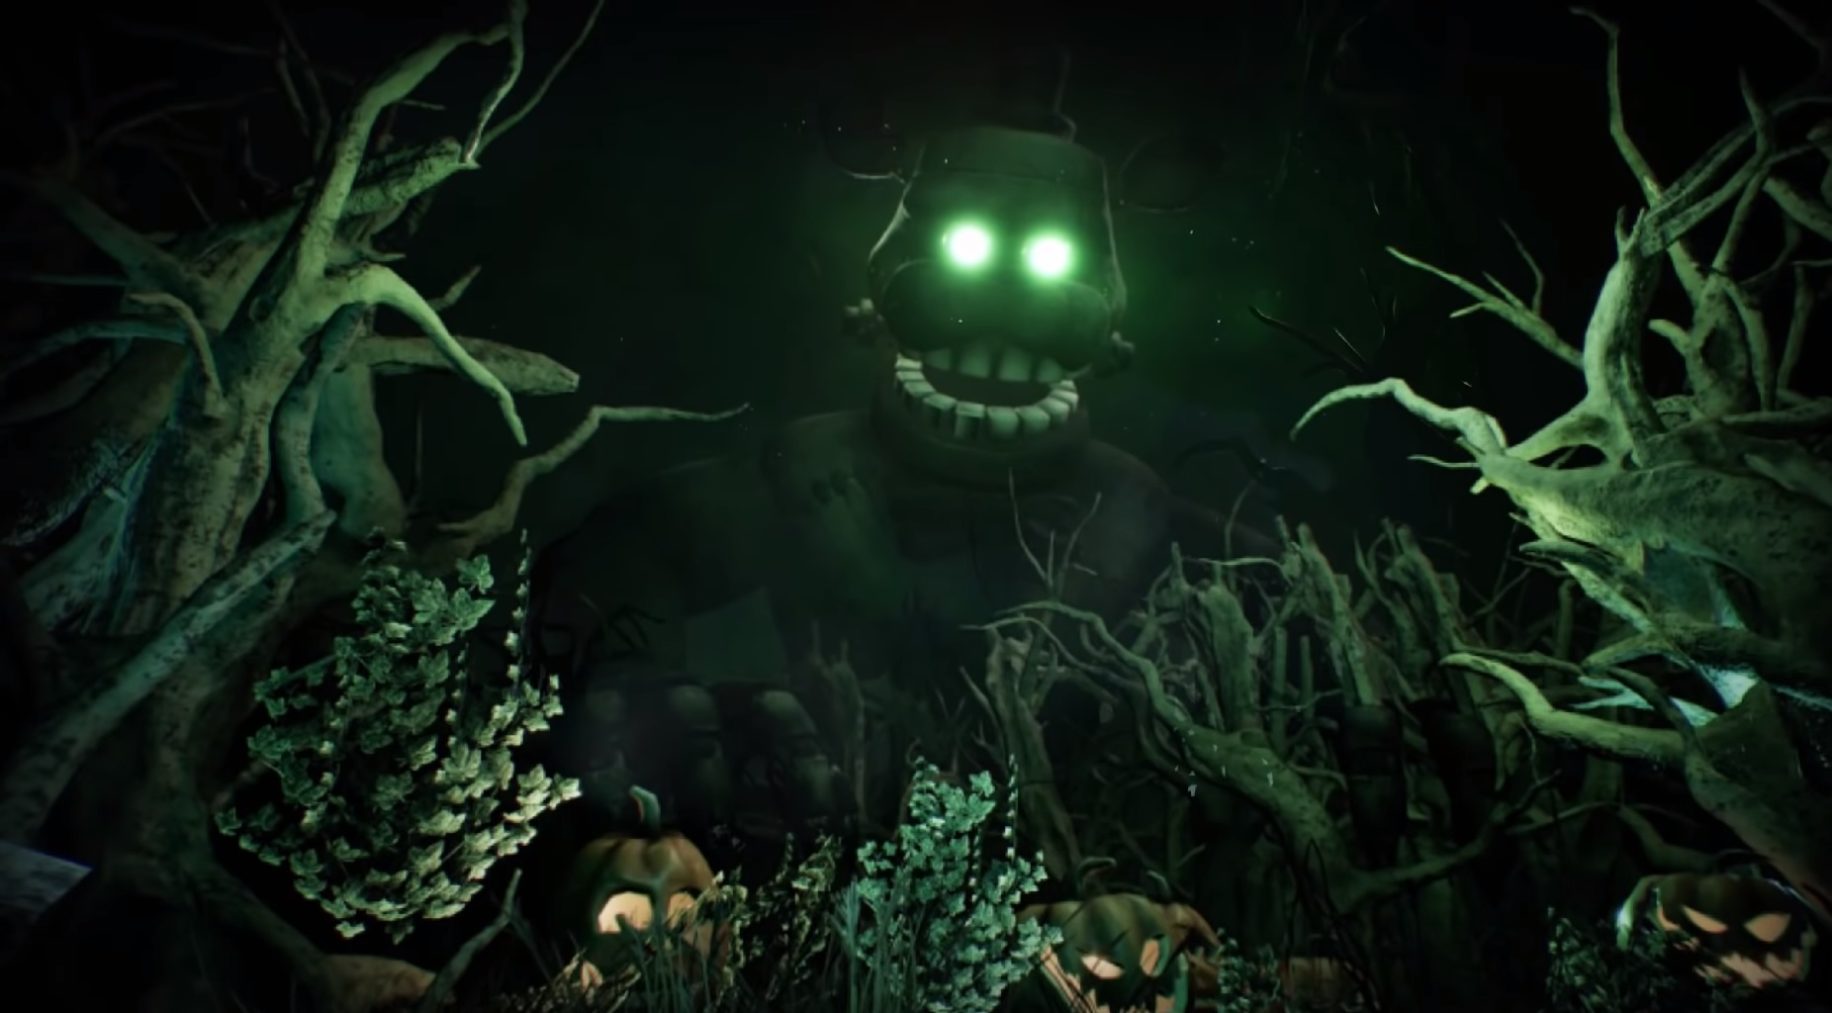 krig vejkryds Stå op i stedet New Five Nights At Freddy's VR DLC Is On The Way